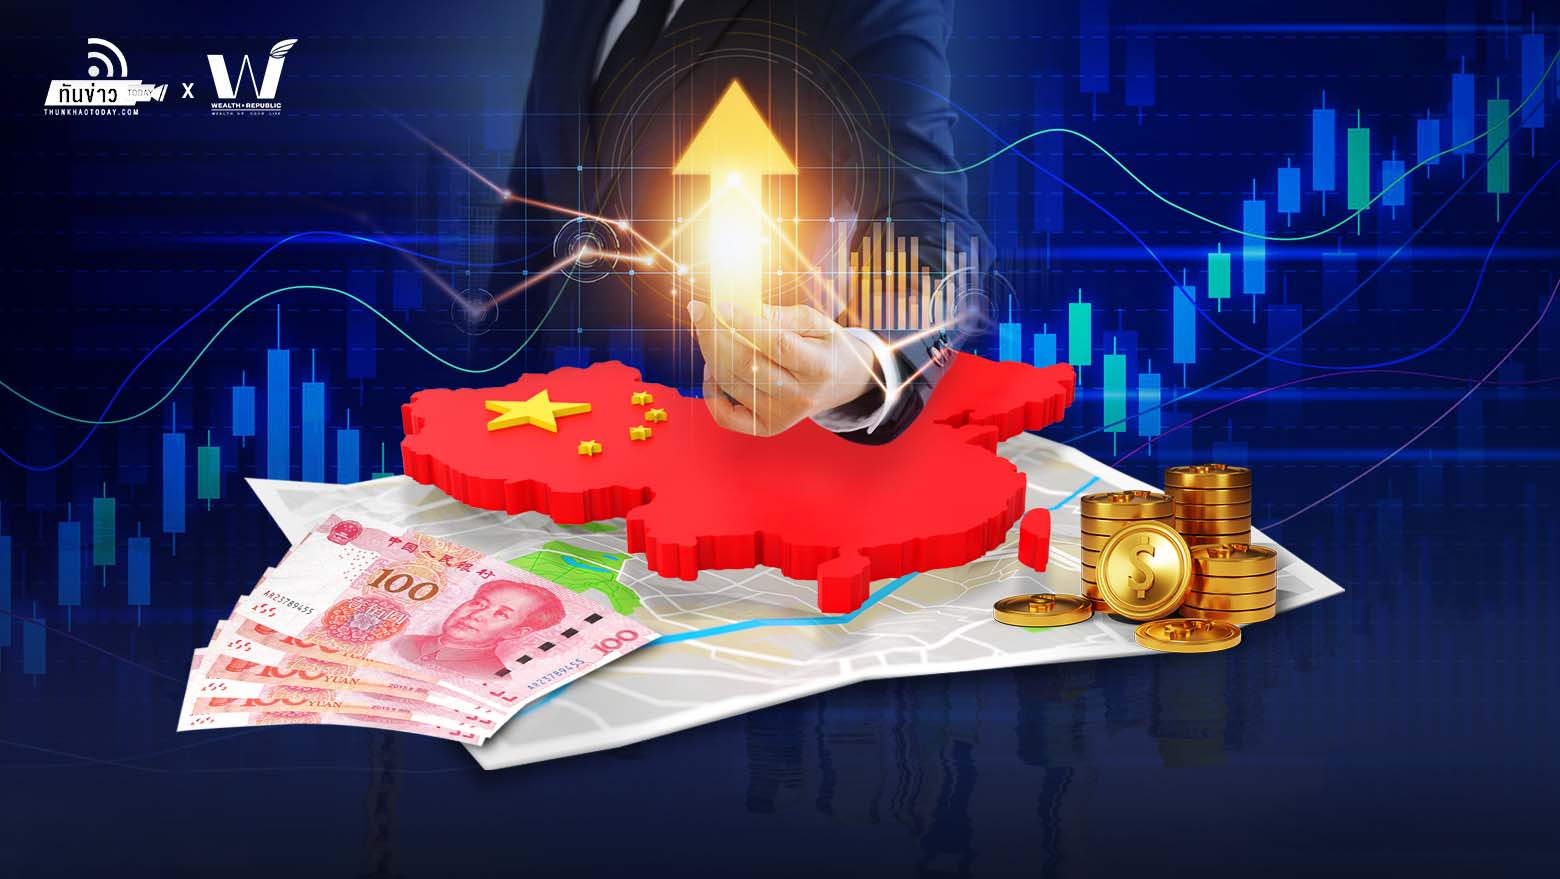 นักลงทุนสถาบันระดับใหญ่ของโลกมอง ‘หุ้นจีน’ พ้นจุดต่ำสุดไปแล้ว เชื่อครึ่งปีหลังจะชนะตลาดหุ้นทั่วโลก